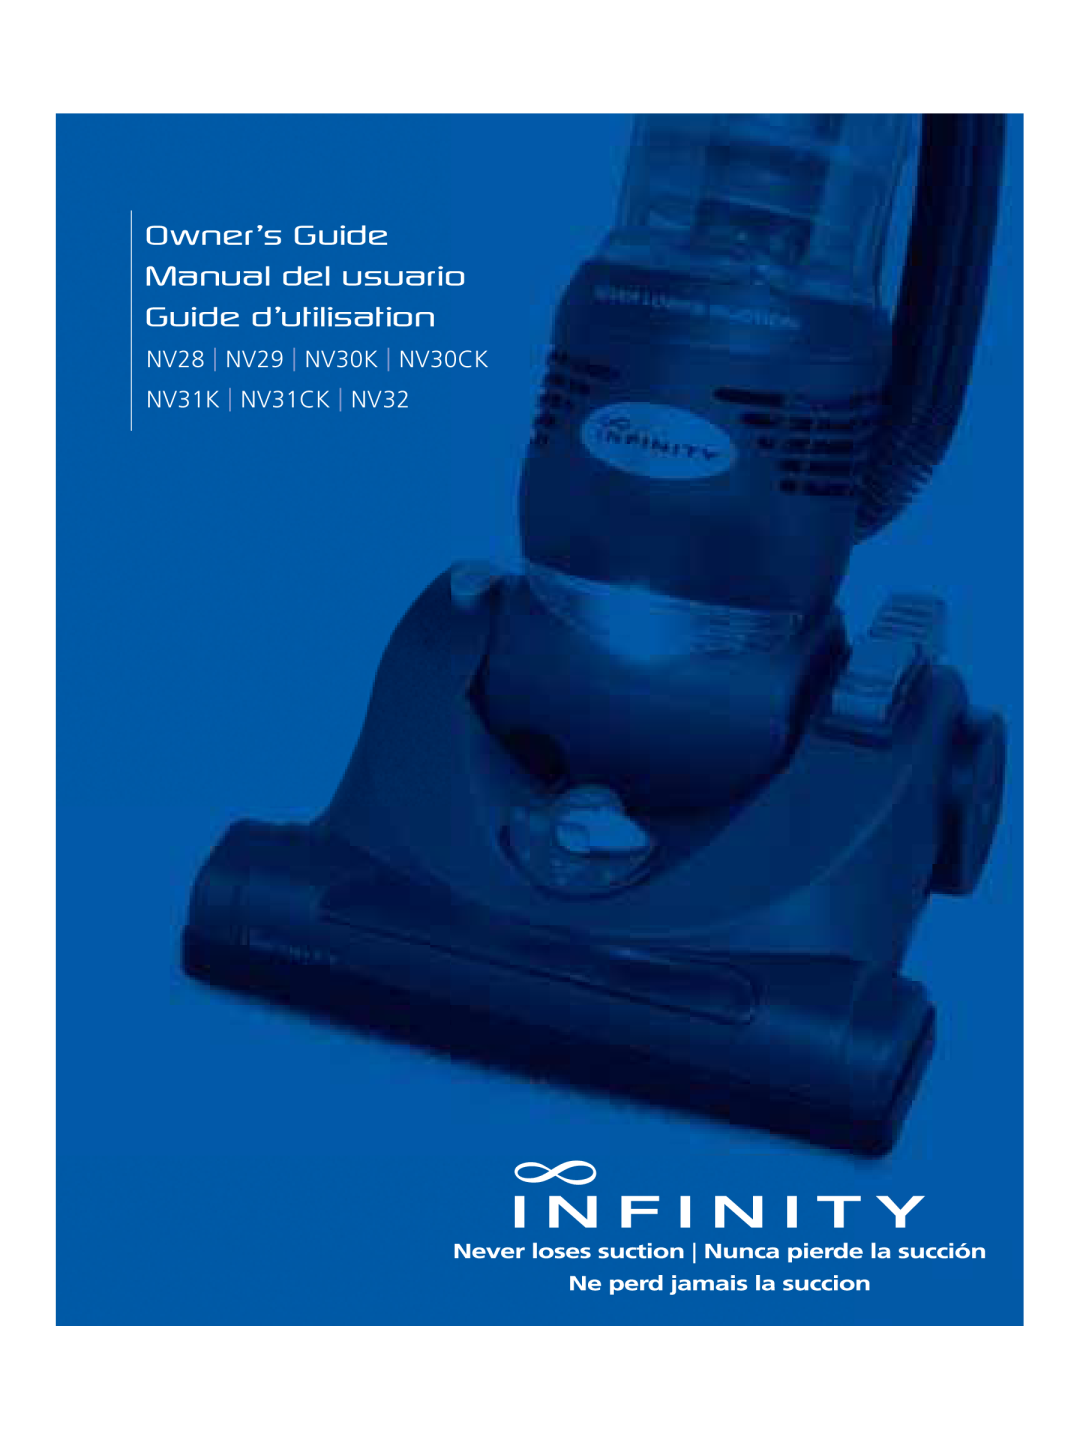 Infinity manual Owner’s Guide Manual del usuario, Guide d’utilisation, NV28 NV29 NV30K NV30CK, NV31K NV31CK NV32 